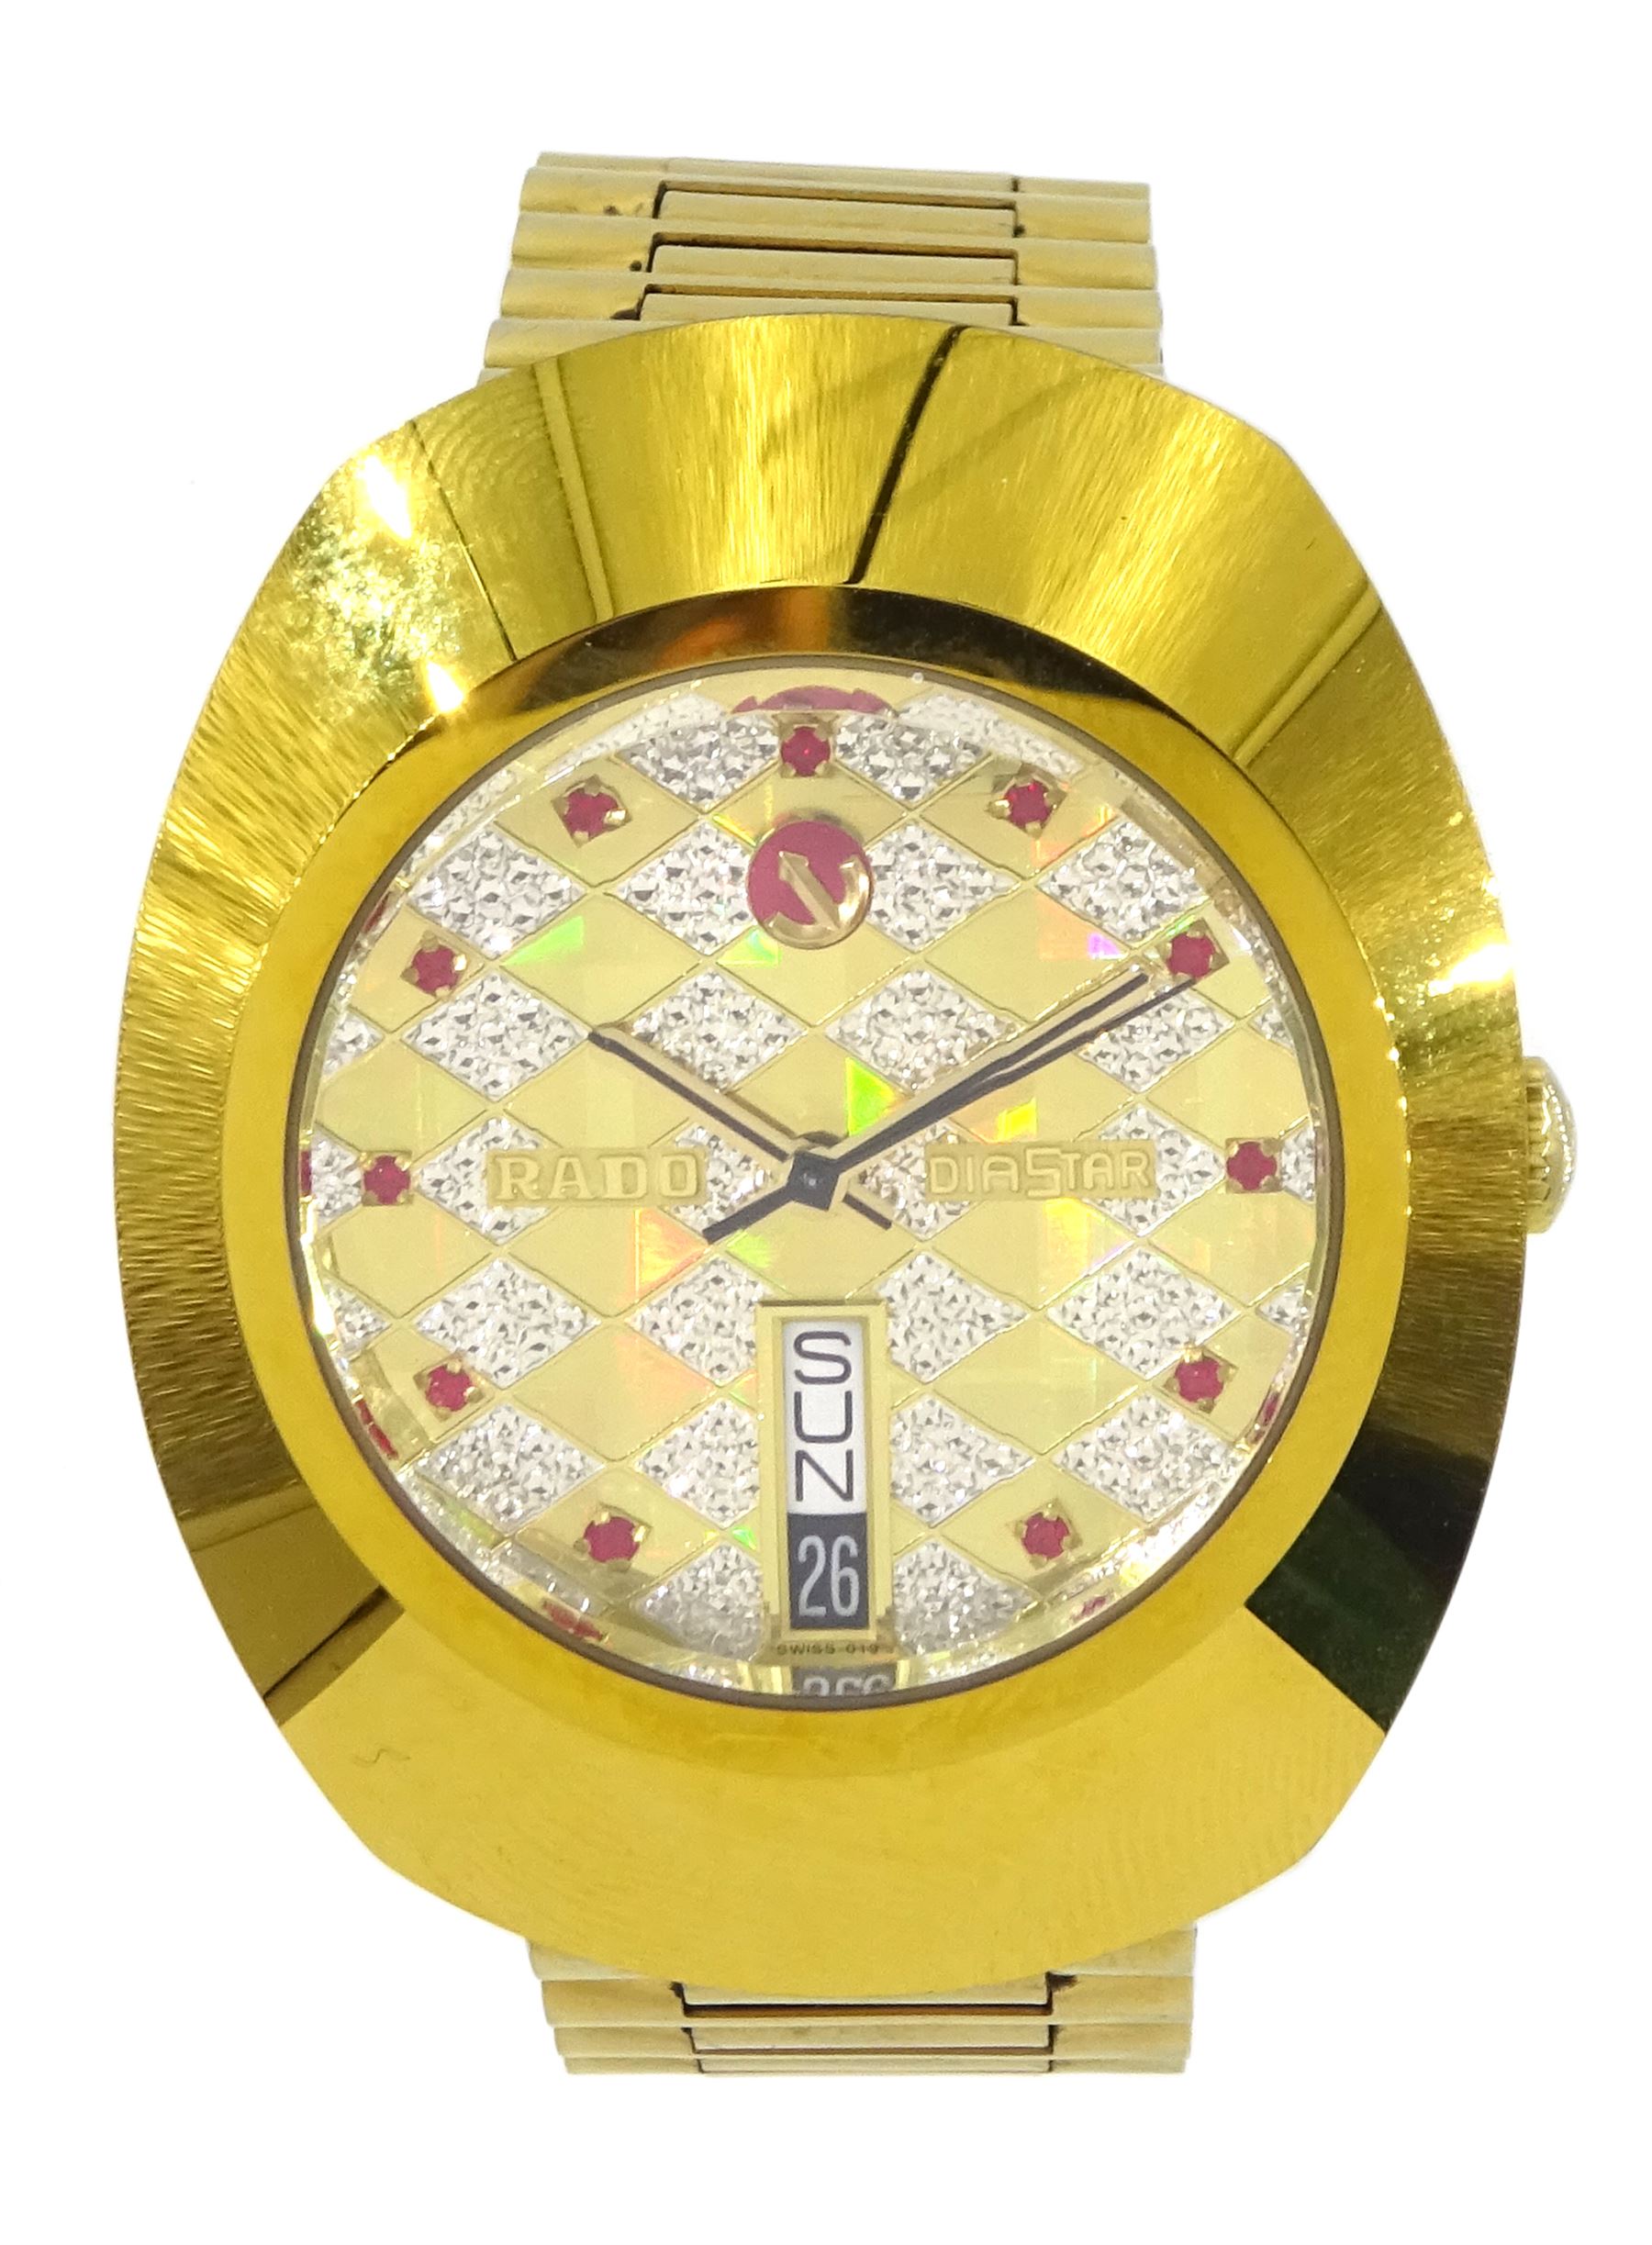 Rado DiaStar automatic gilt stainless steel wristwatch